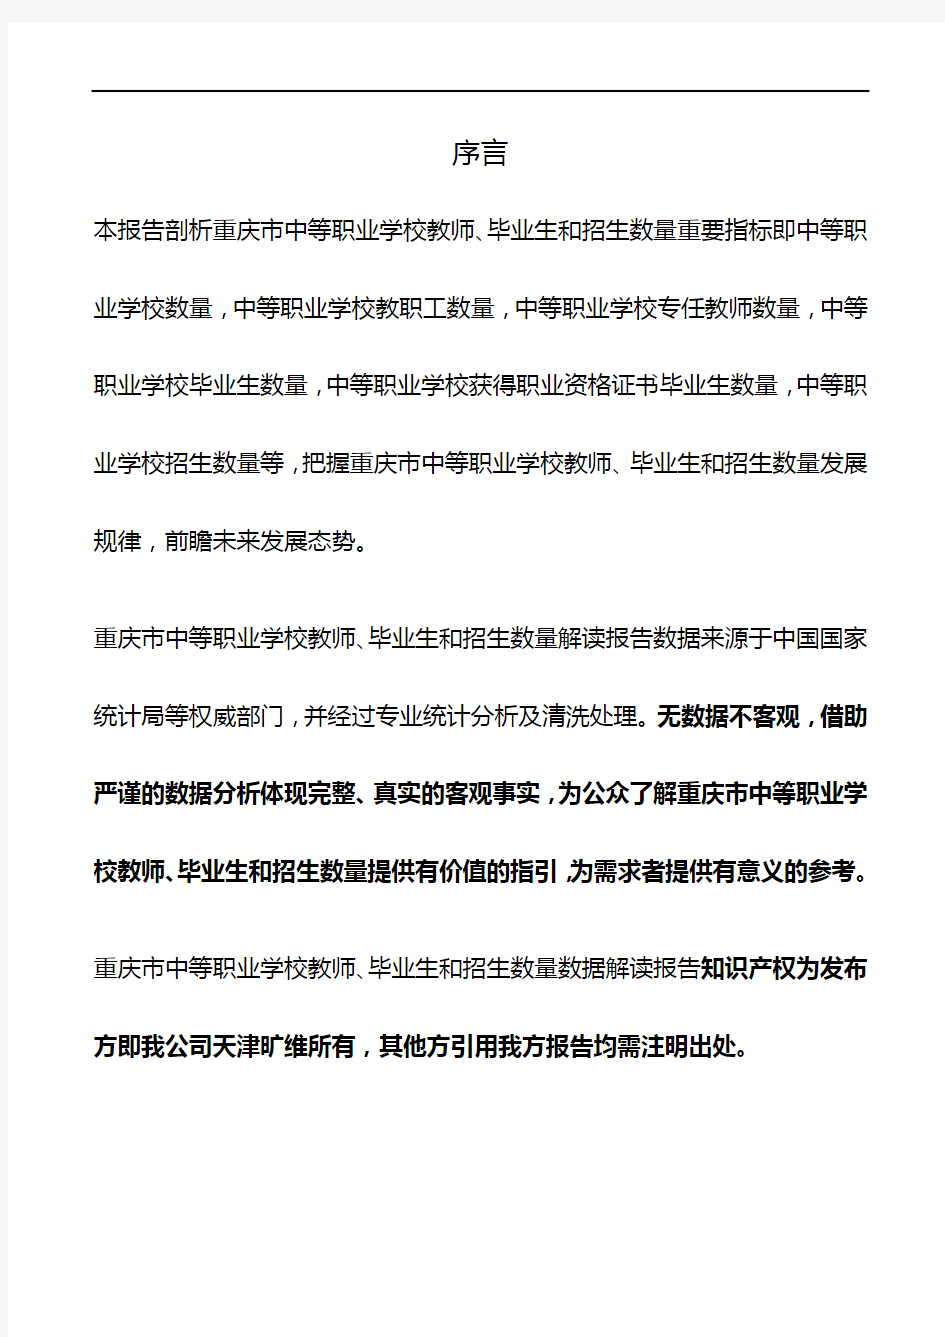 重庆市中等职业学校教师、毕业生和招生数量3年数据解读报告2020版